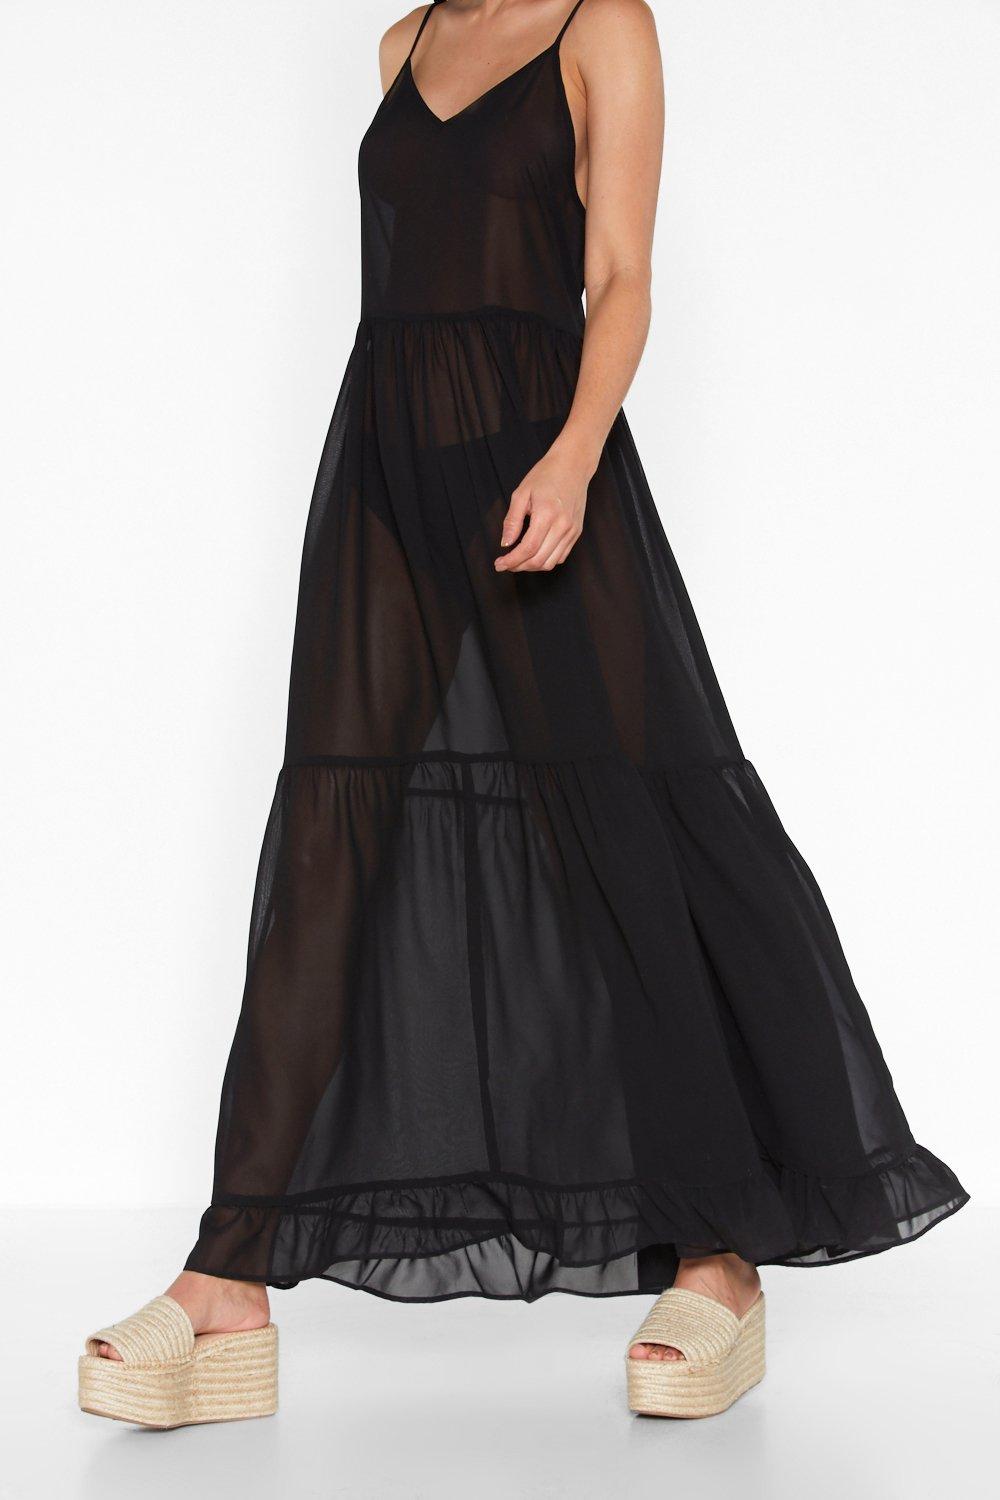 tiered black maxi dress